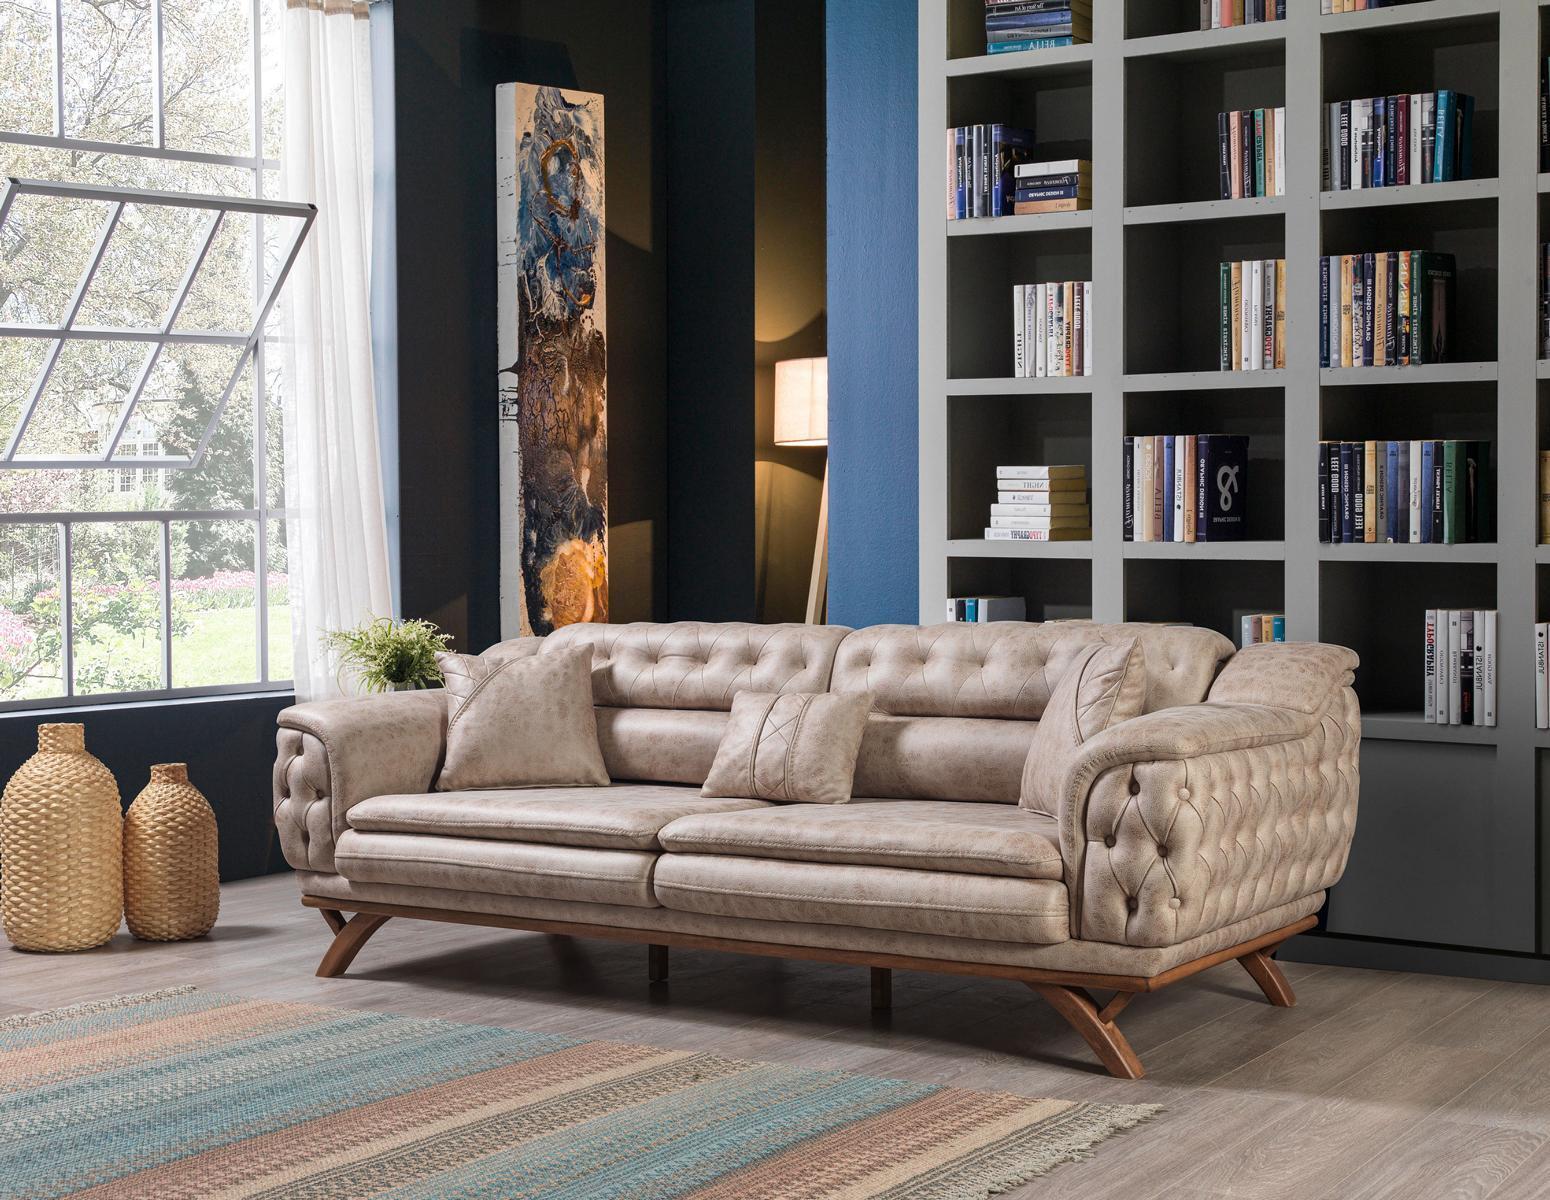 Chesterfield 3 Sitzer Beige Design Couchen Polster Sofas Textil Couch